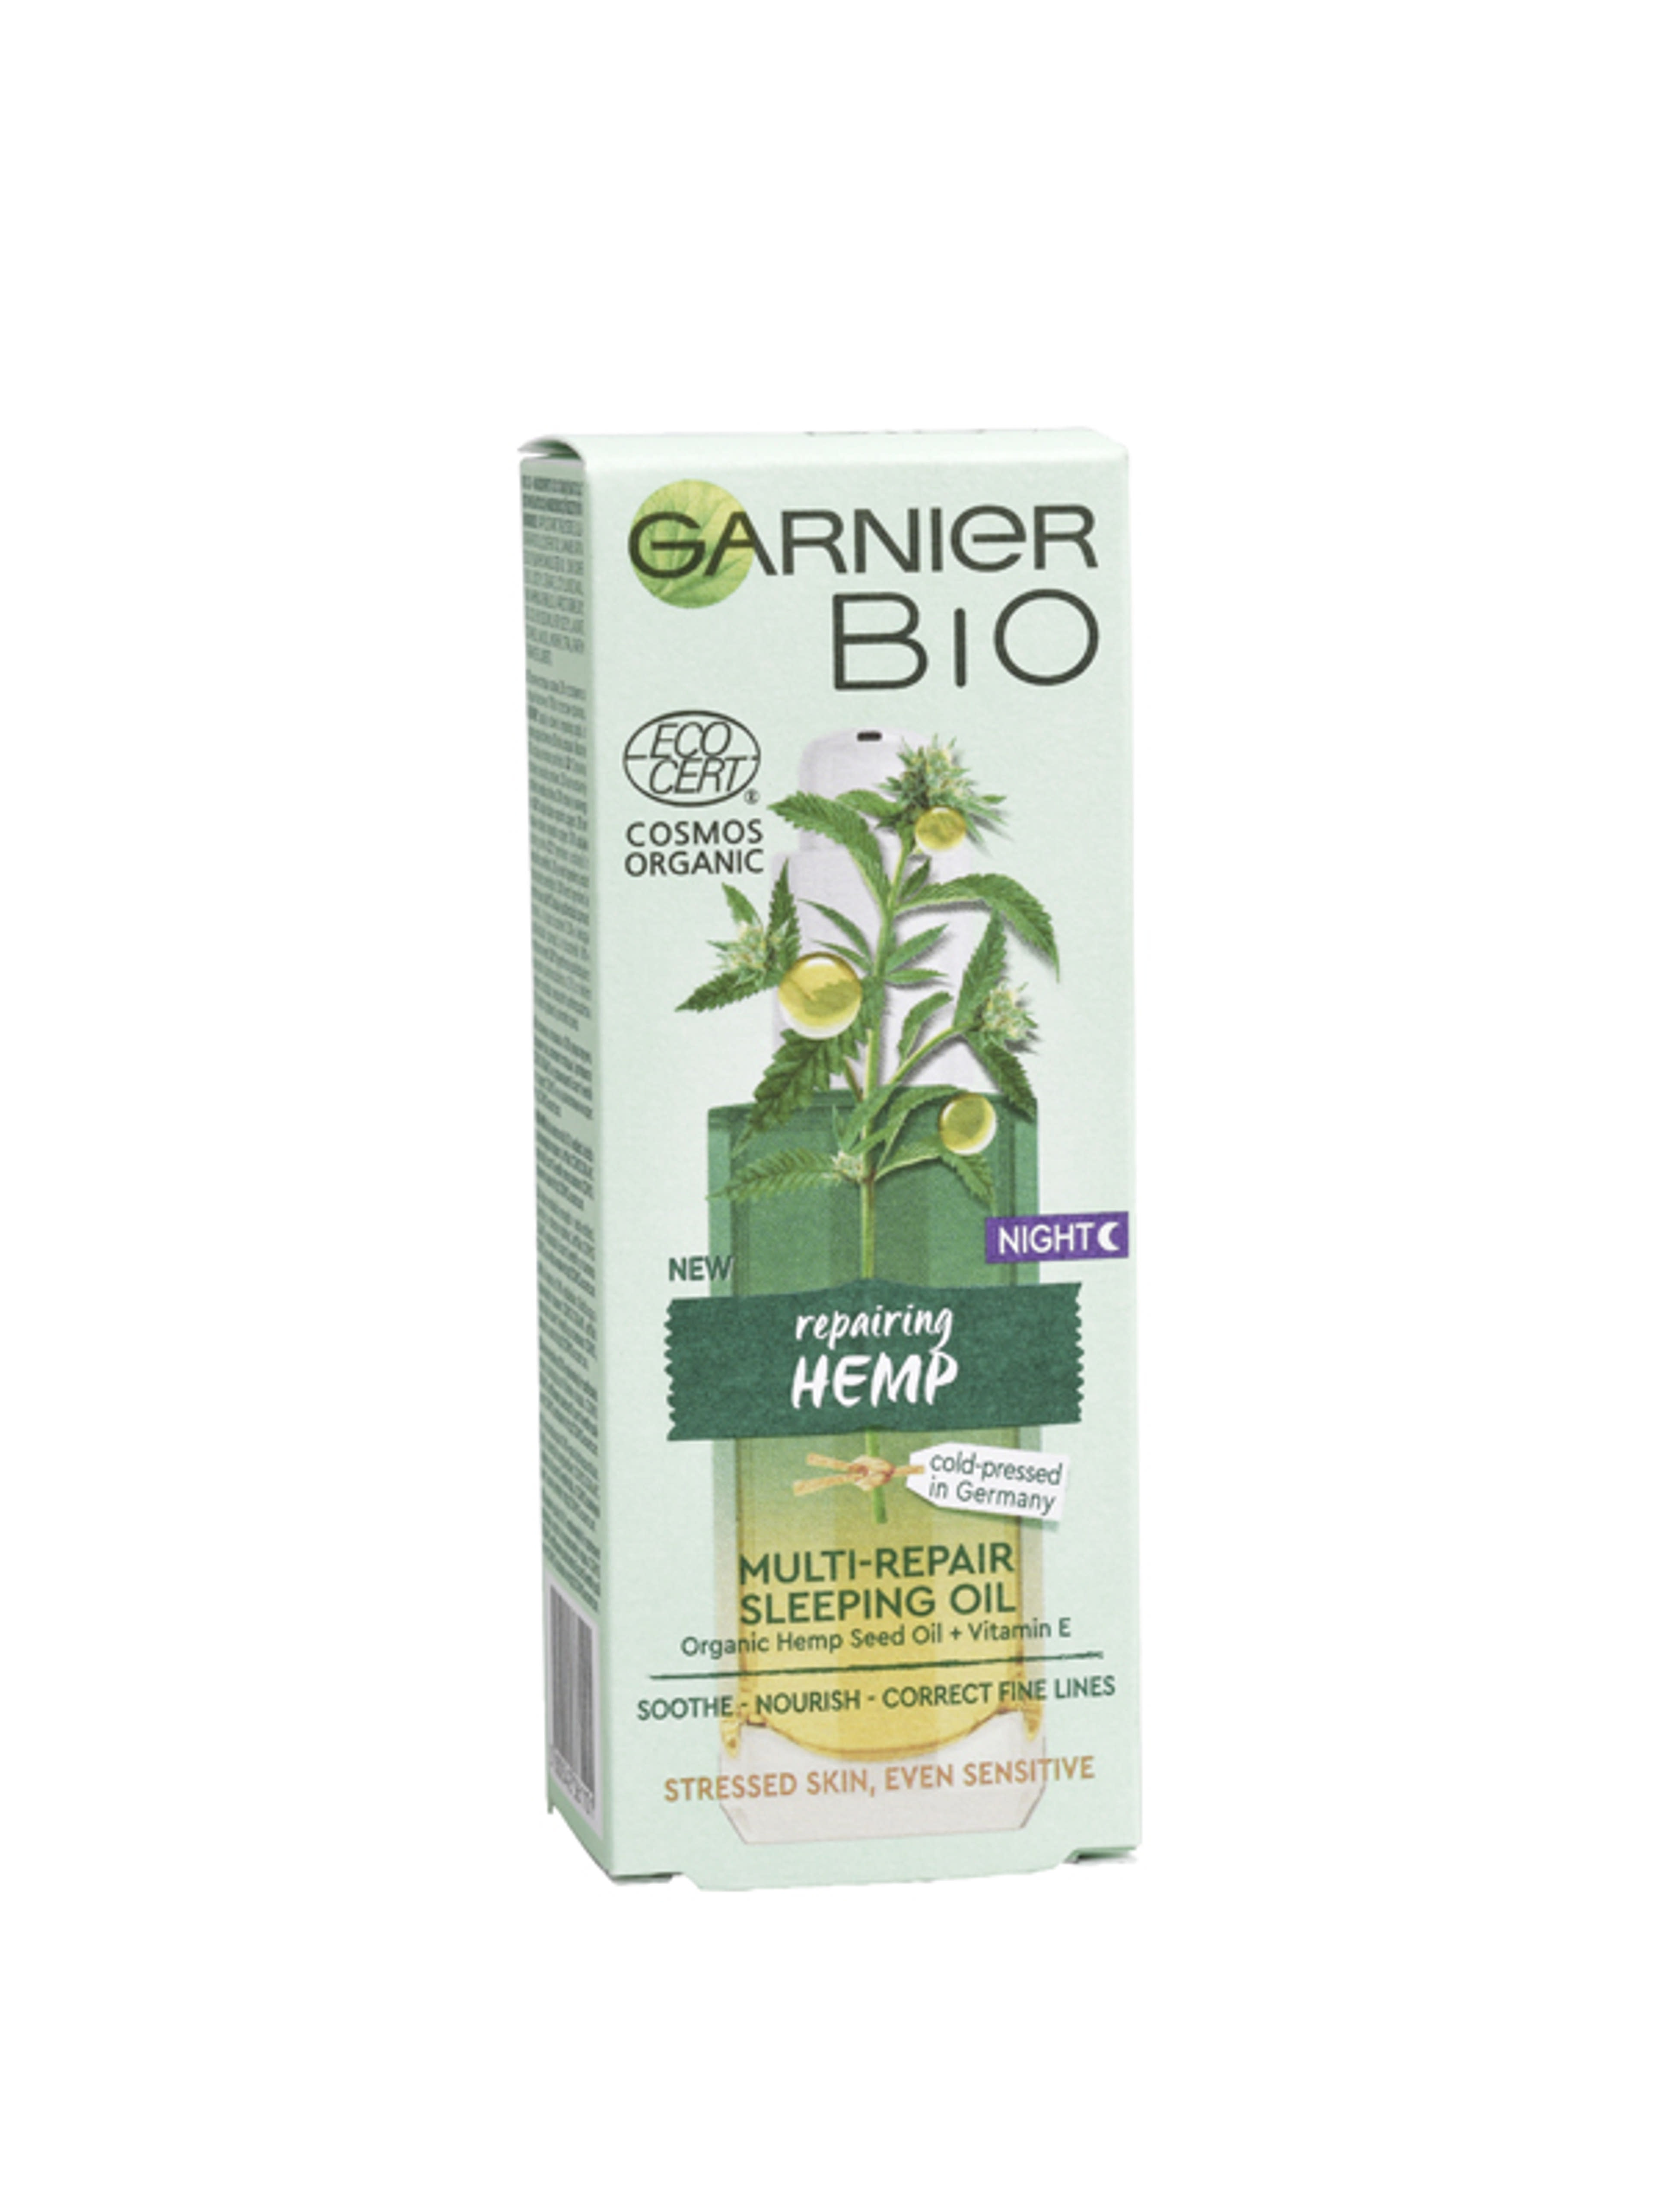 Garnier Bio Hemp többszörösen regeneráló éjszakai olaj - 30 ml